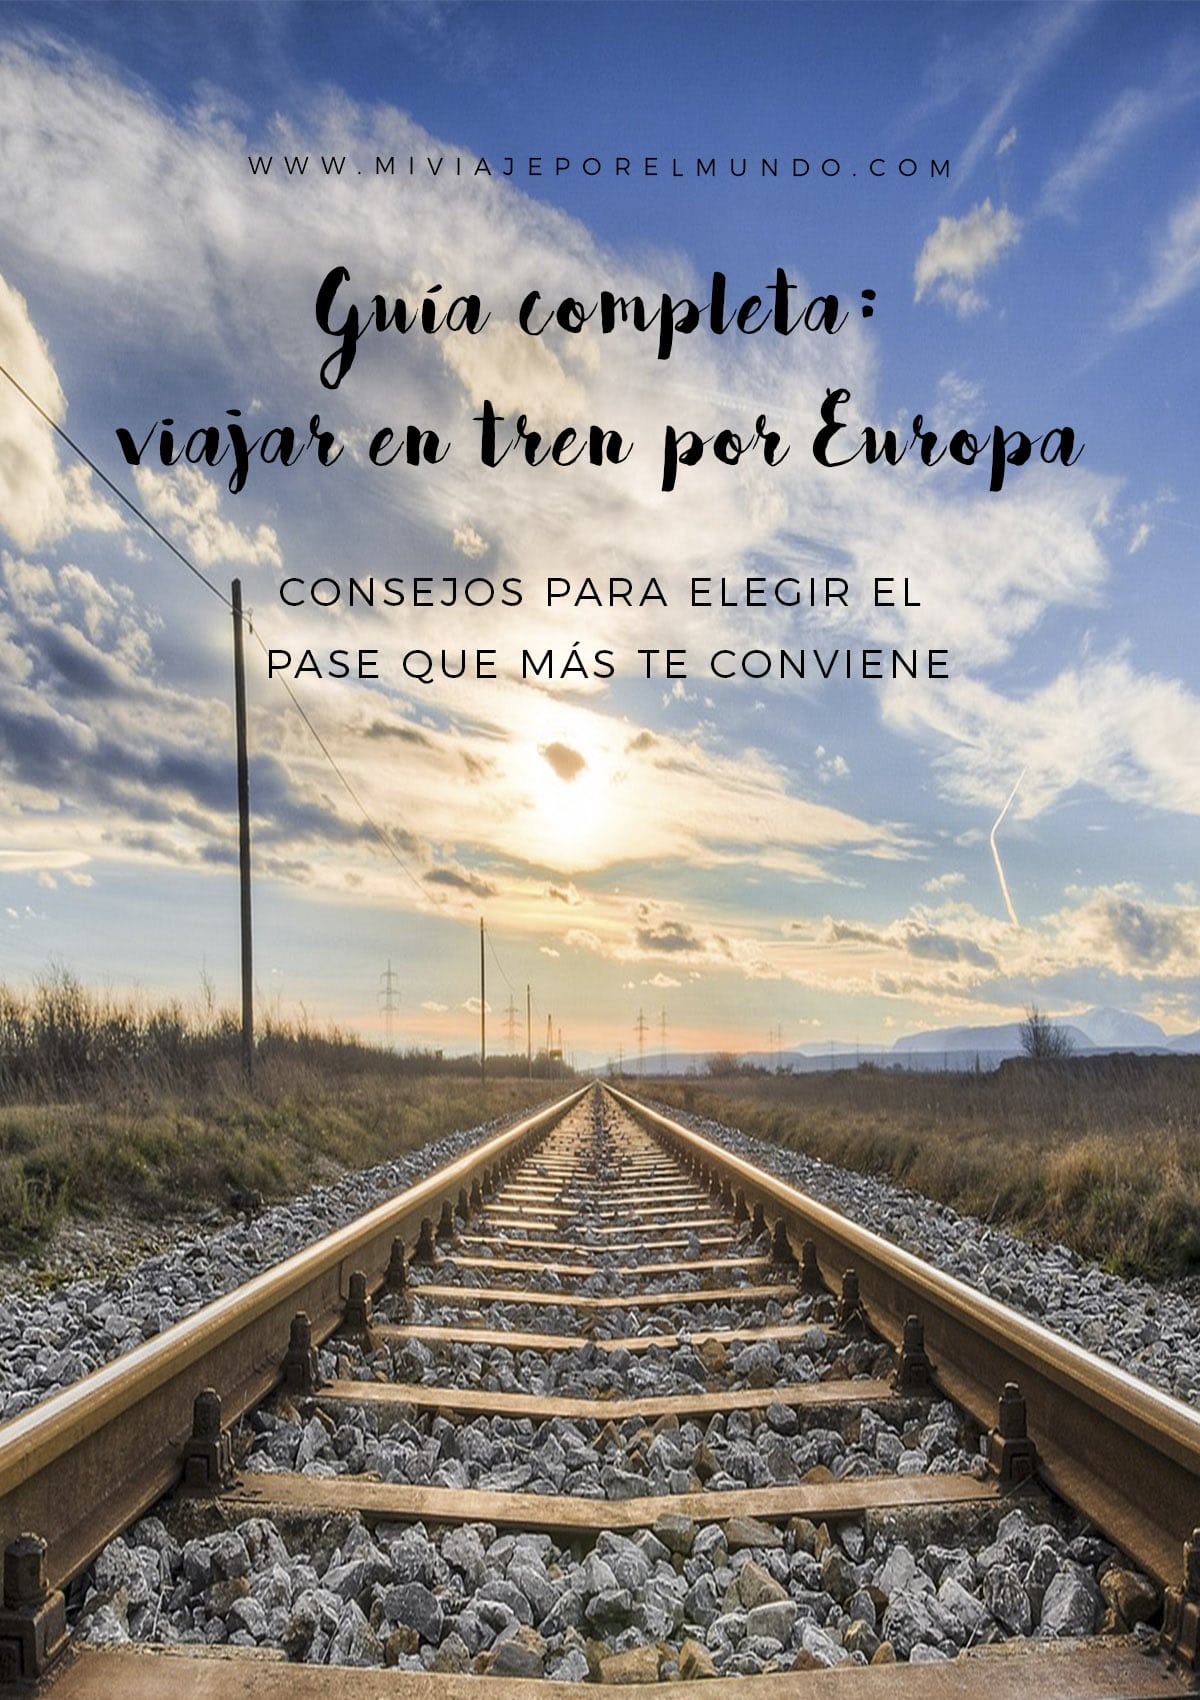 como planear un recorrido en tren por europa